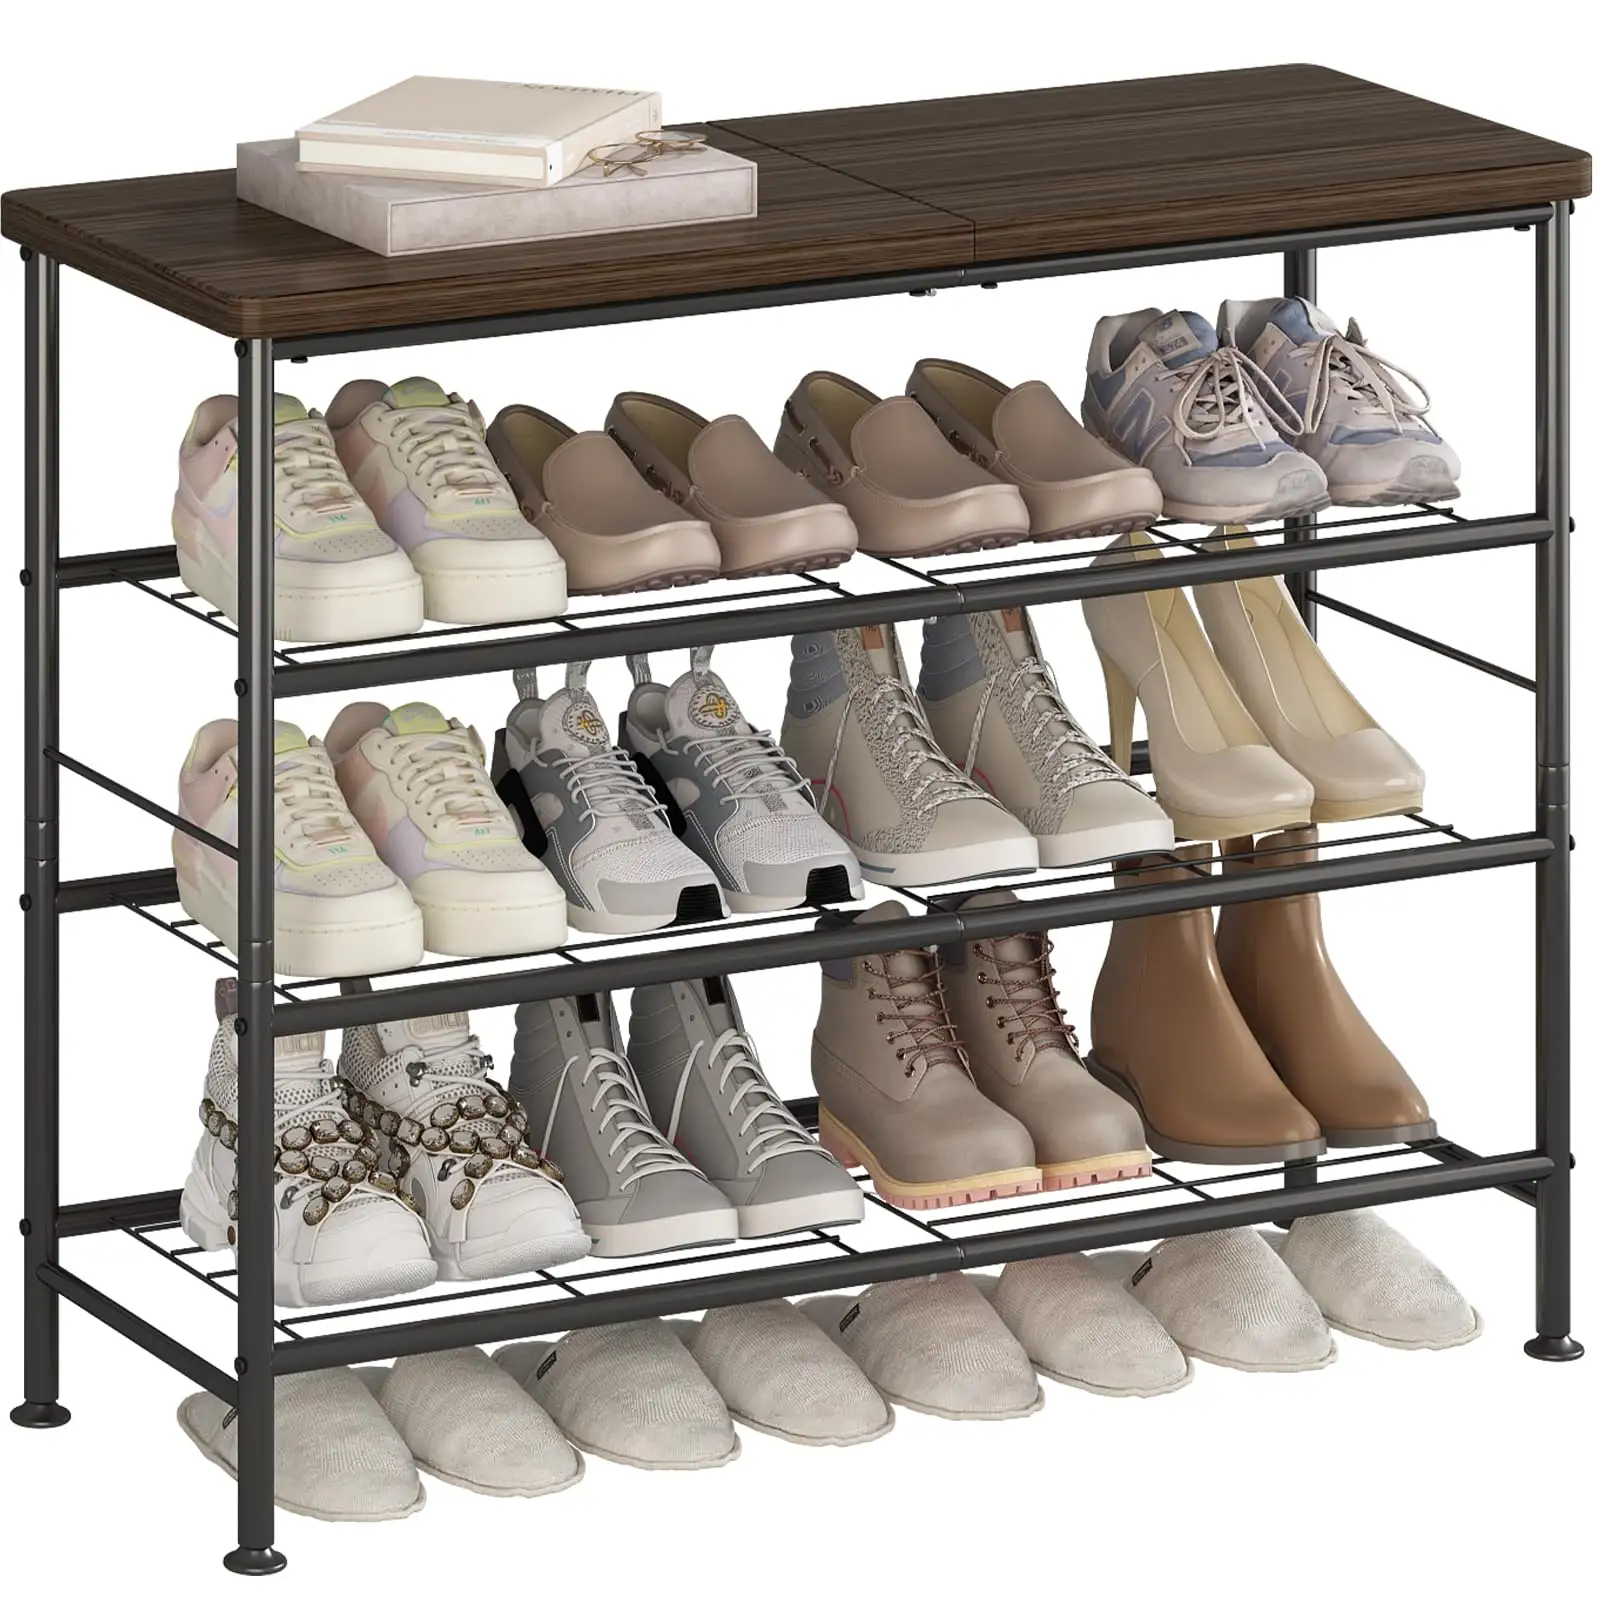 Sıcak satış Metal ve ahşap ayakkabı raflı dolap 5 Tier ayakkabı sergileme rafı depolama organizatör ayakkabı rafları & ev için duruyor